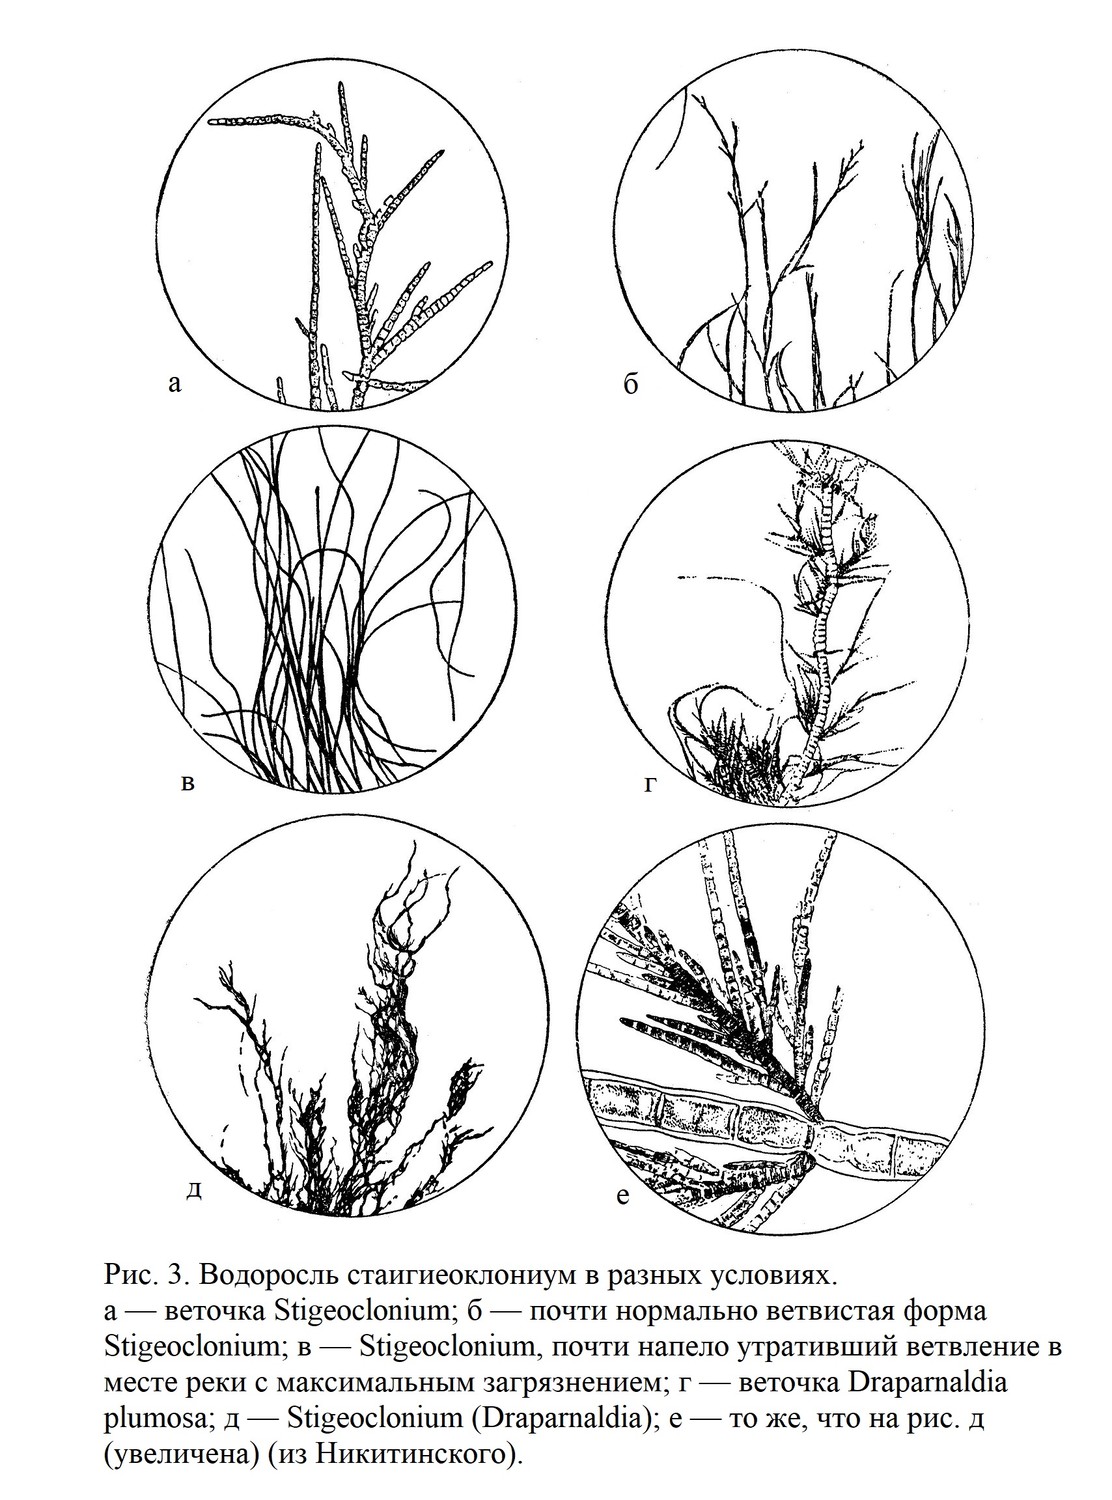 Класс зеленые водоросли — Chlorophyceae